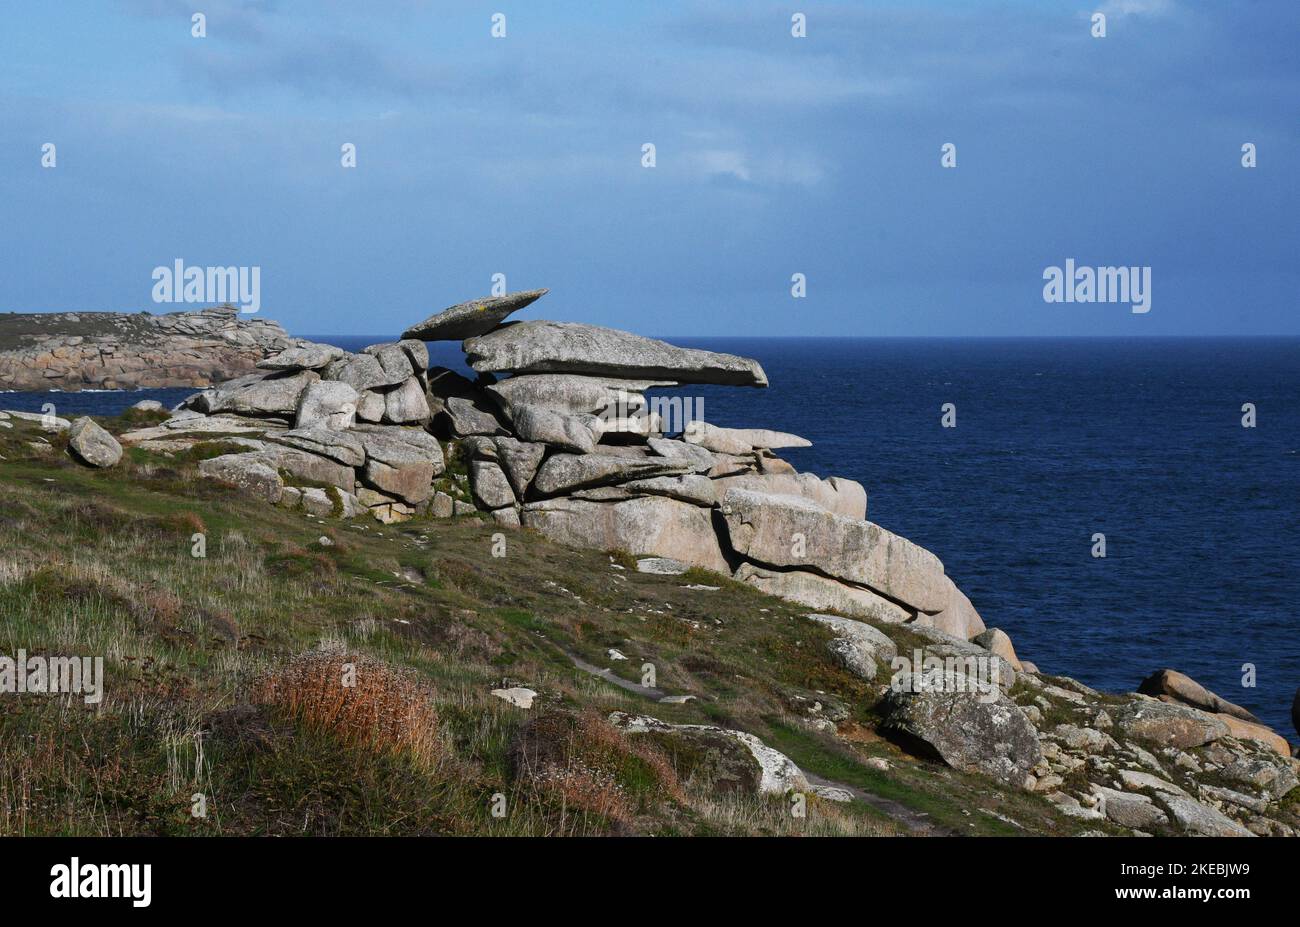 Kanzelgestein eine der natürlichen Skulpturen, die durch die Verwitterung des grobkörnigen Hercynian Granits auf Peninnis Head auf der größten Insel von St.Marys gebildet wurde Stockfoto